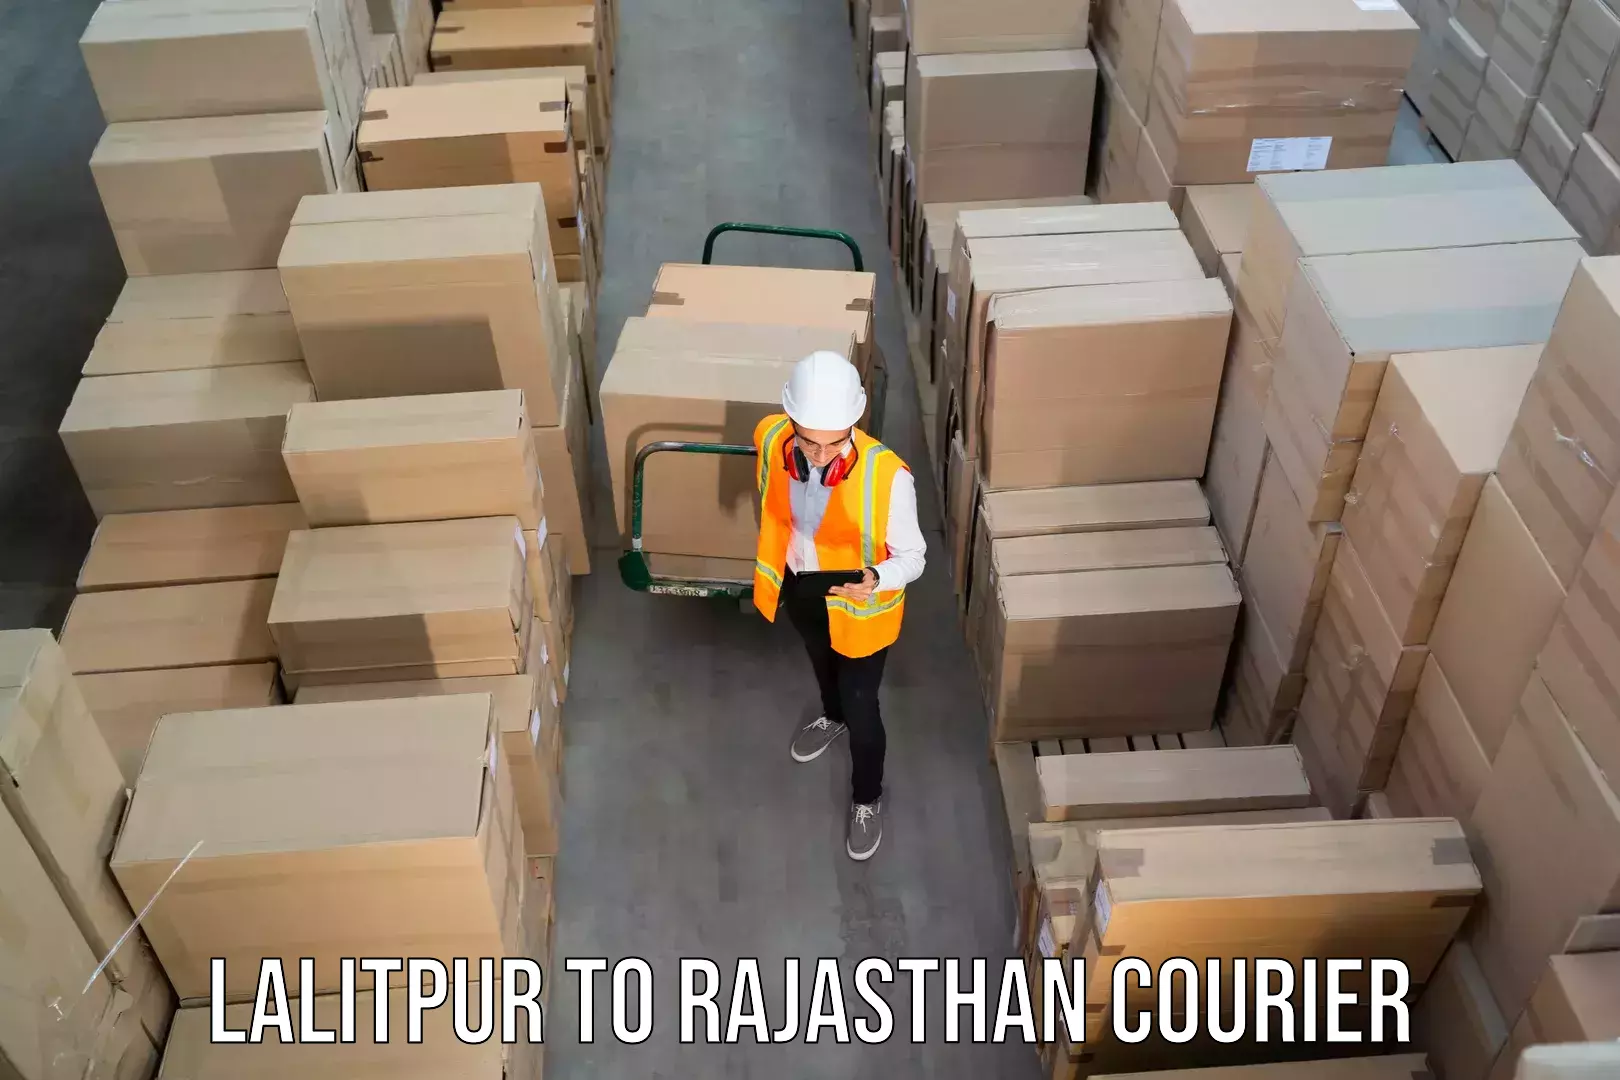 Courier service comparison Lalitpur to Sawai Madhopur